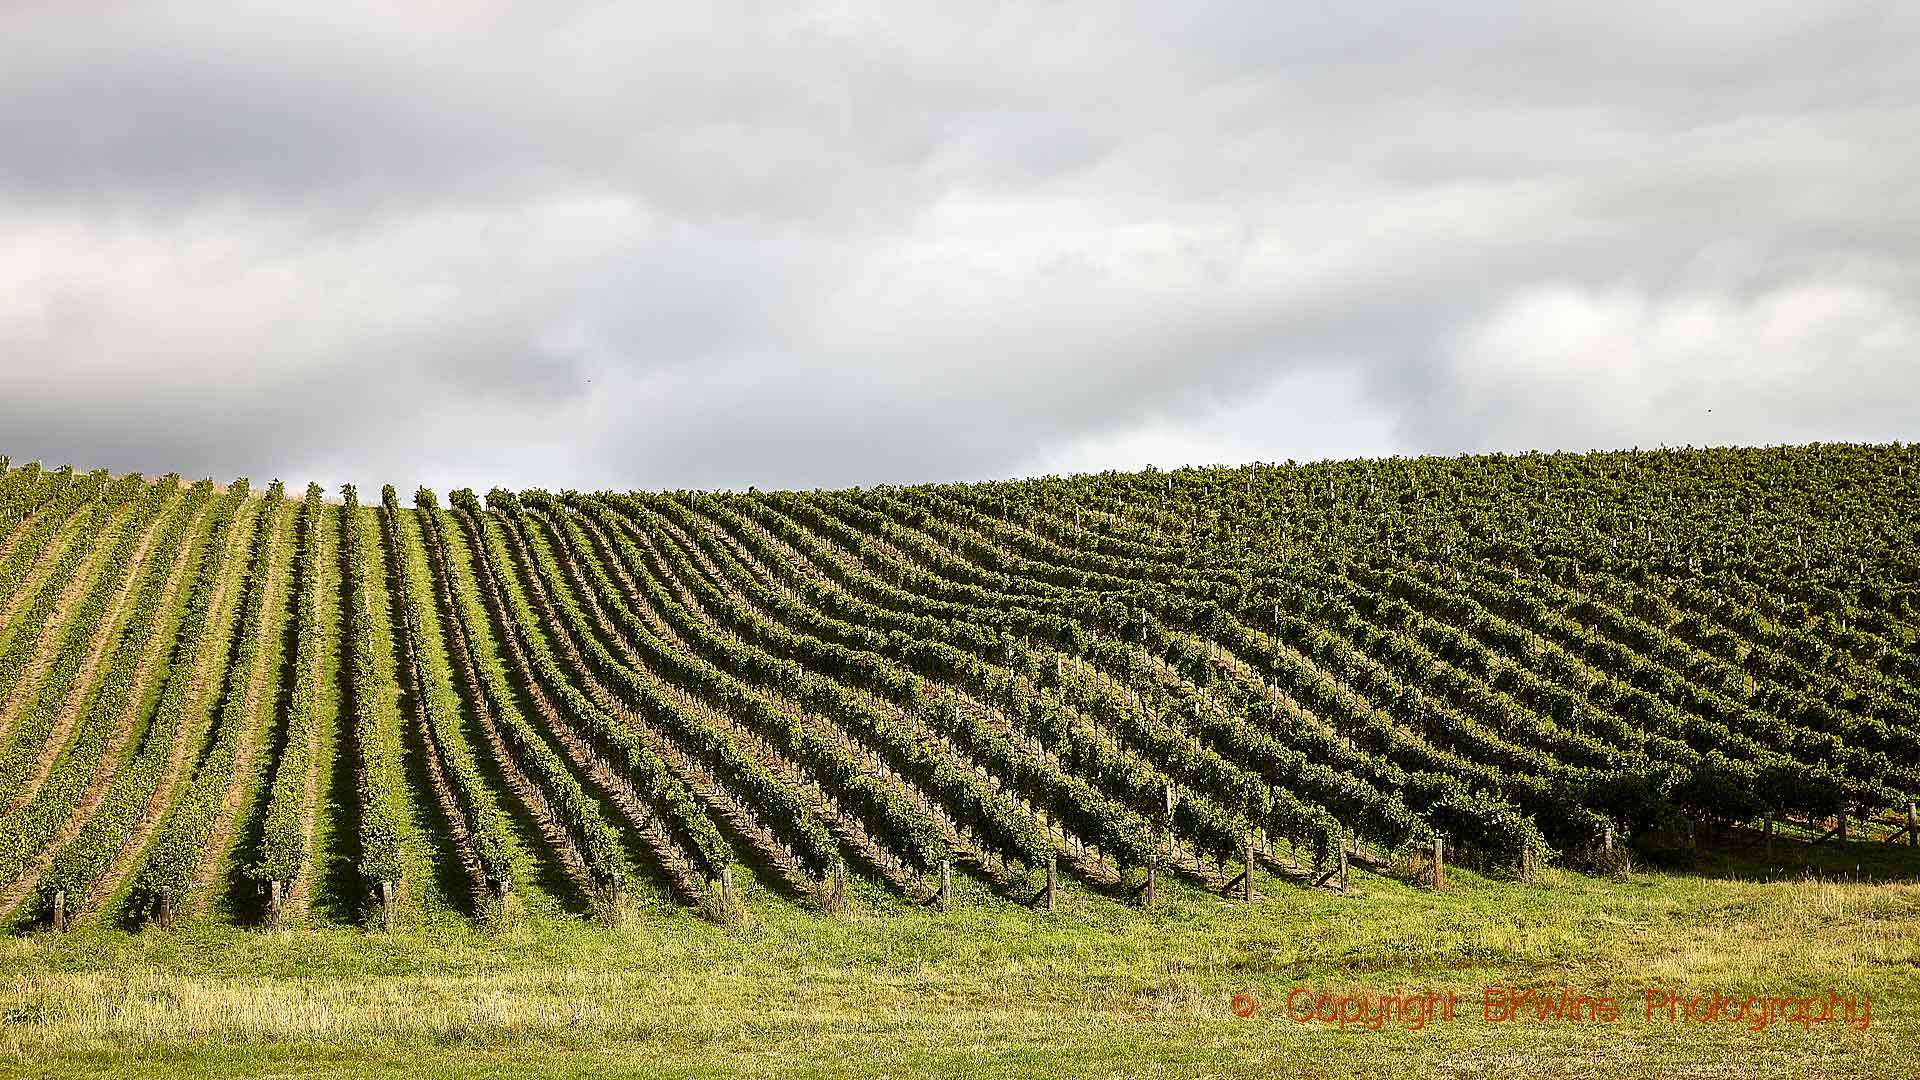 Sauvignon blanc vines in a vineyard in Marlborough